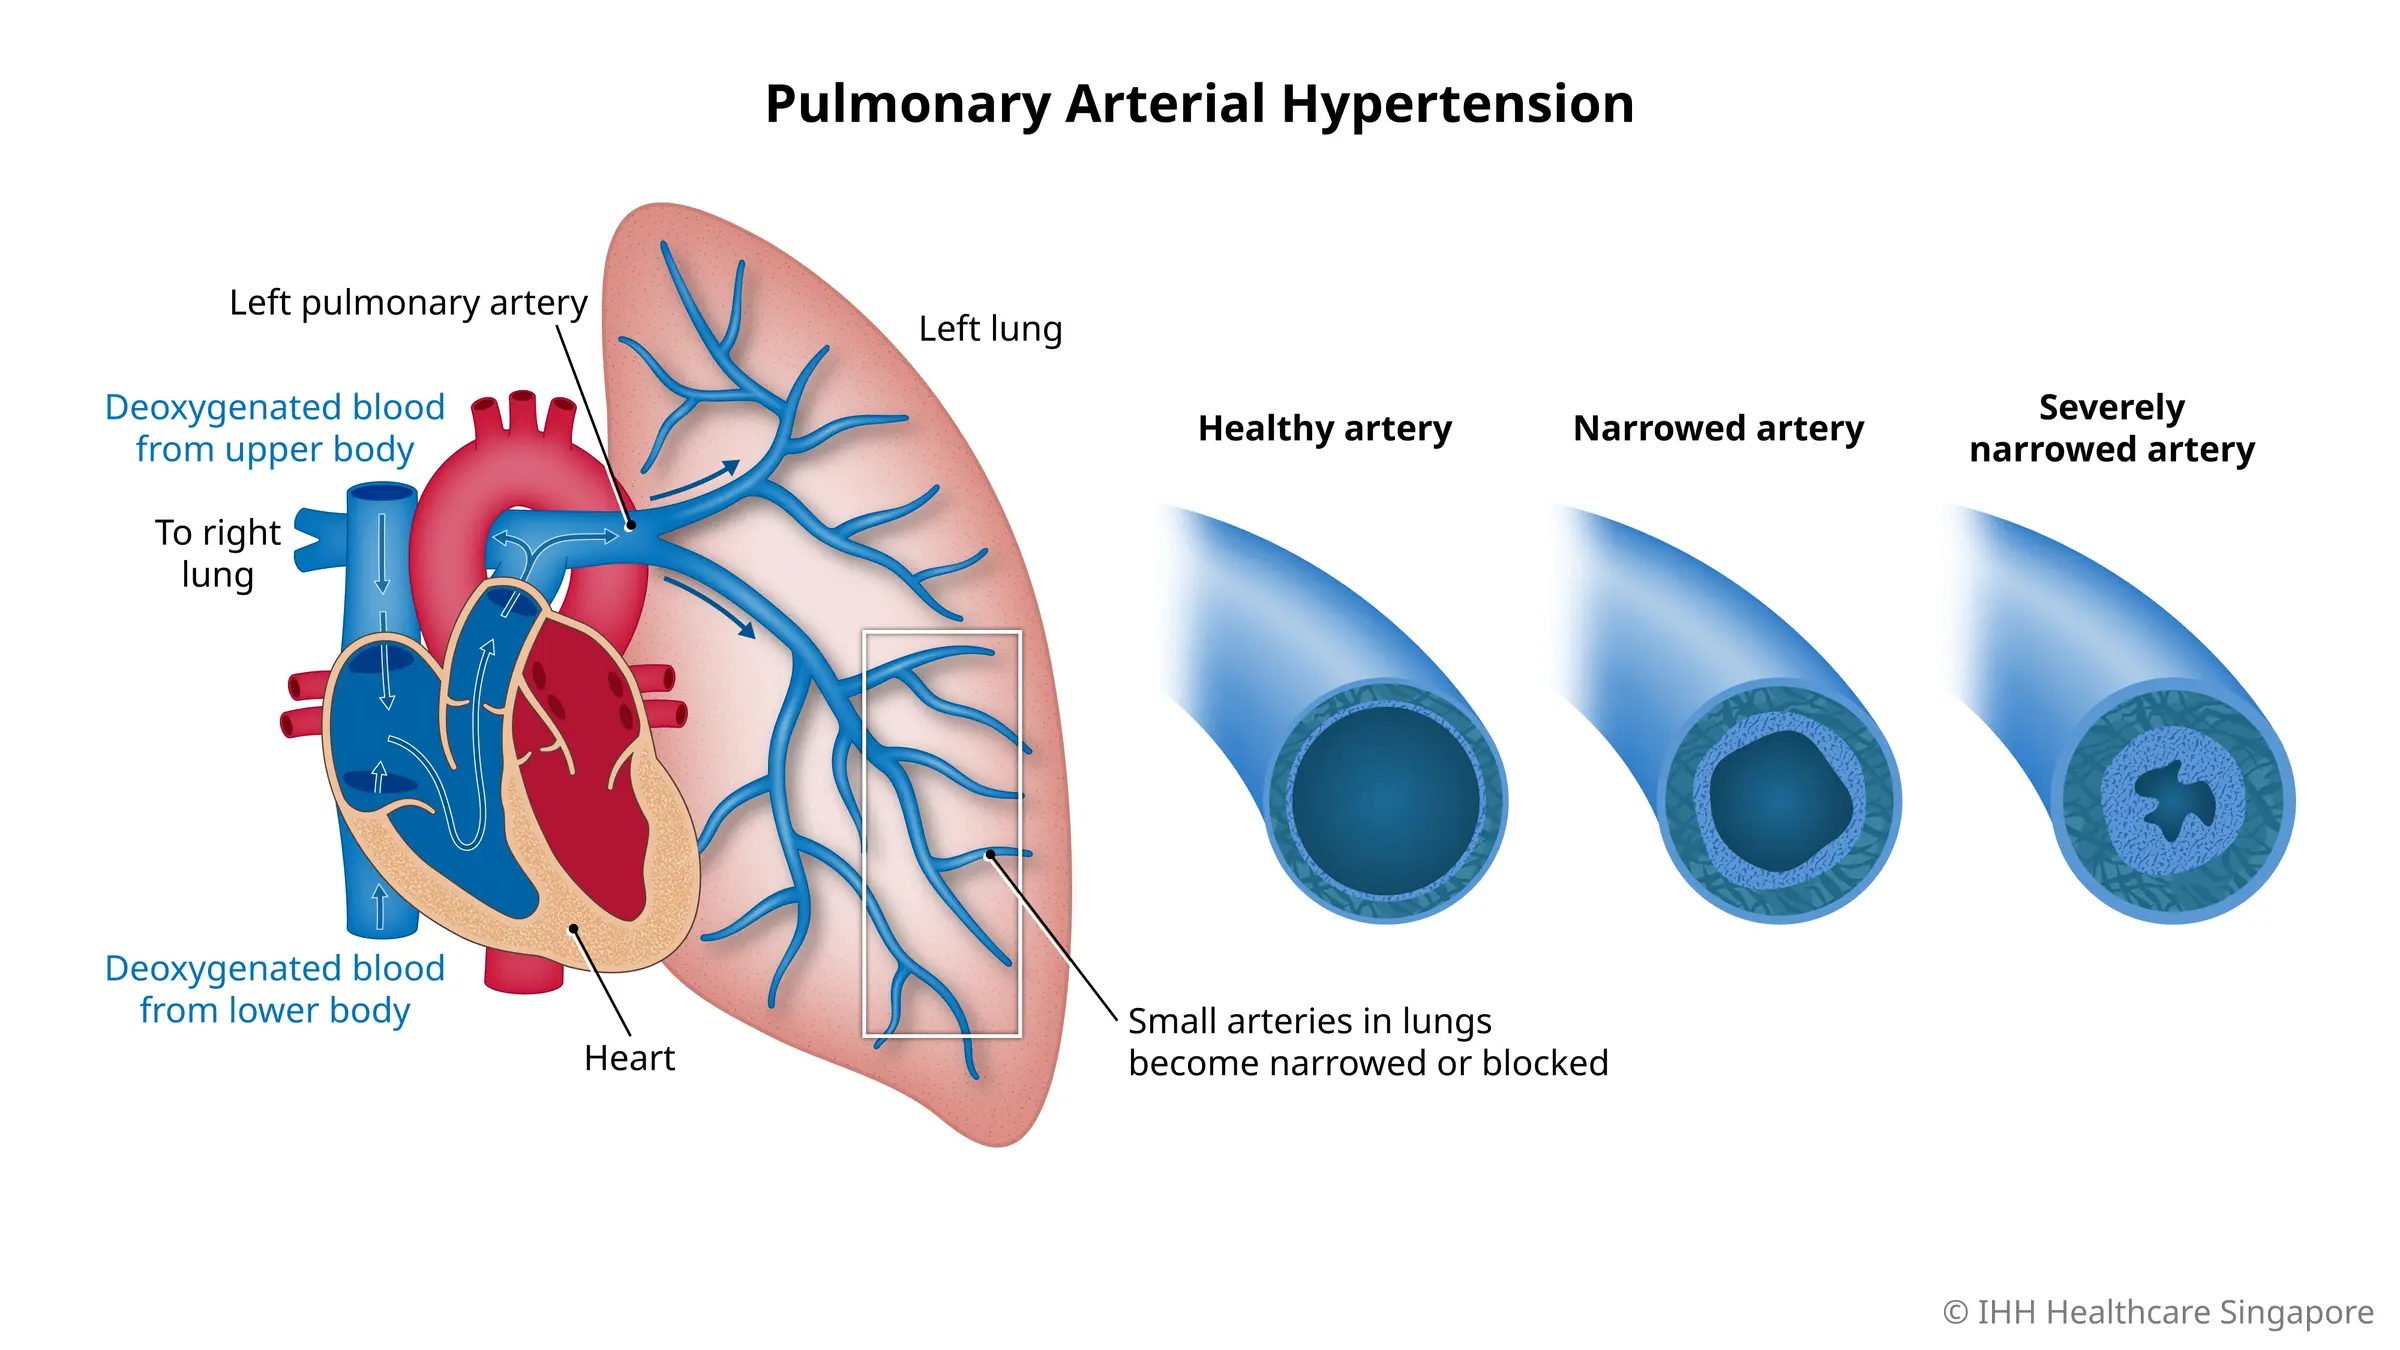 Hipertensi arteri pulmonal adalah jenis tekanan darah tinggi yang terjadi karena arteri kecil di paru-paru menyempit atau tersumbat.